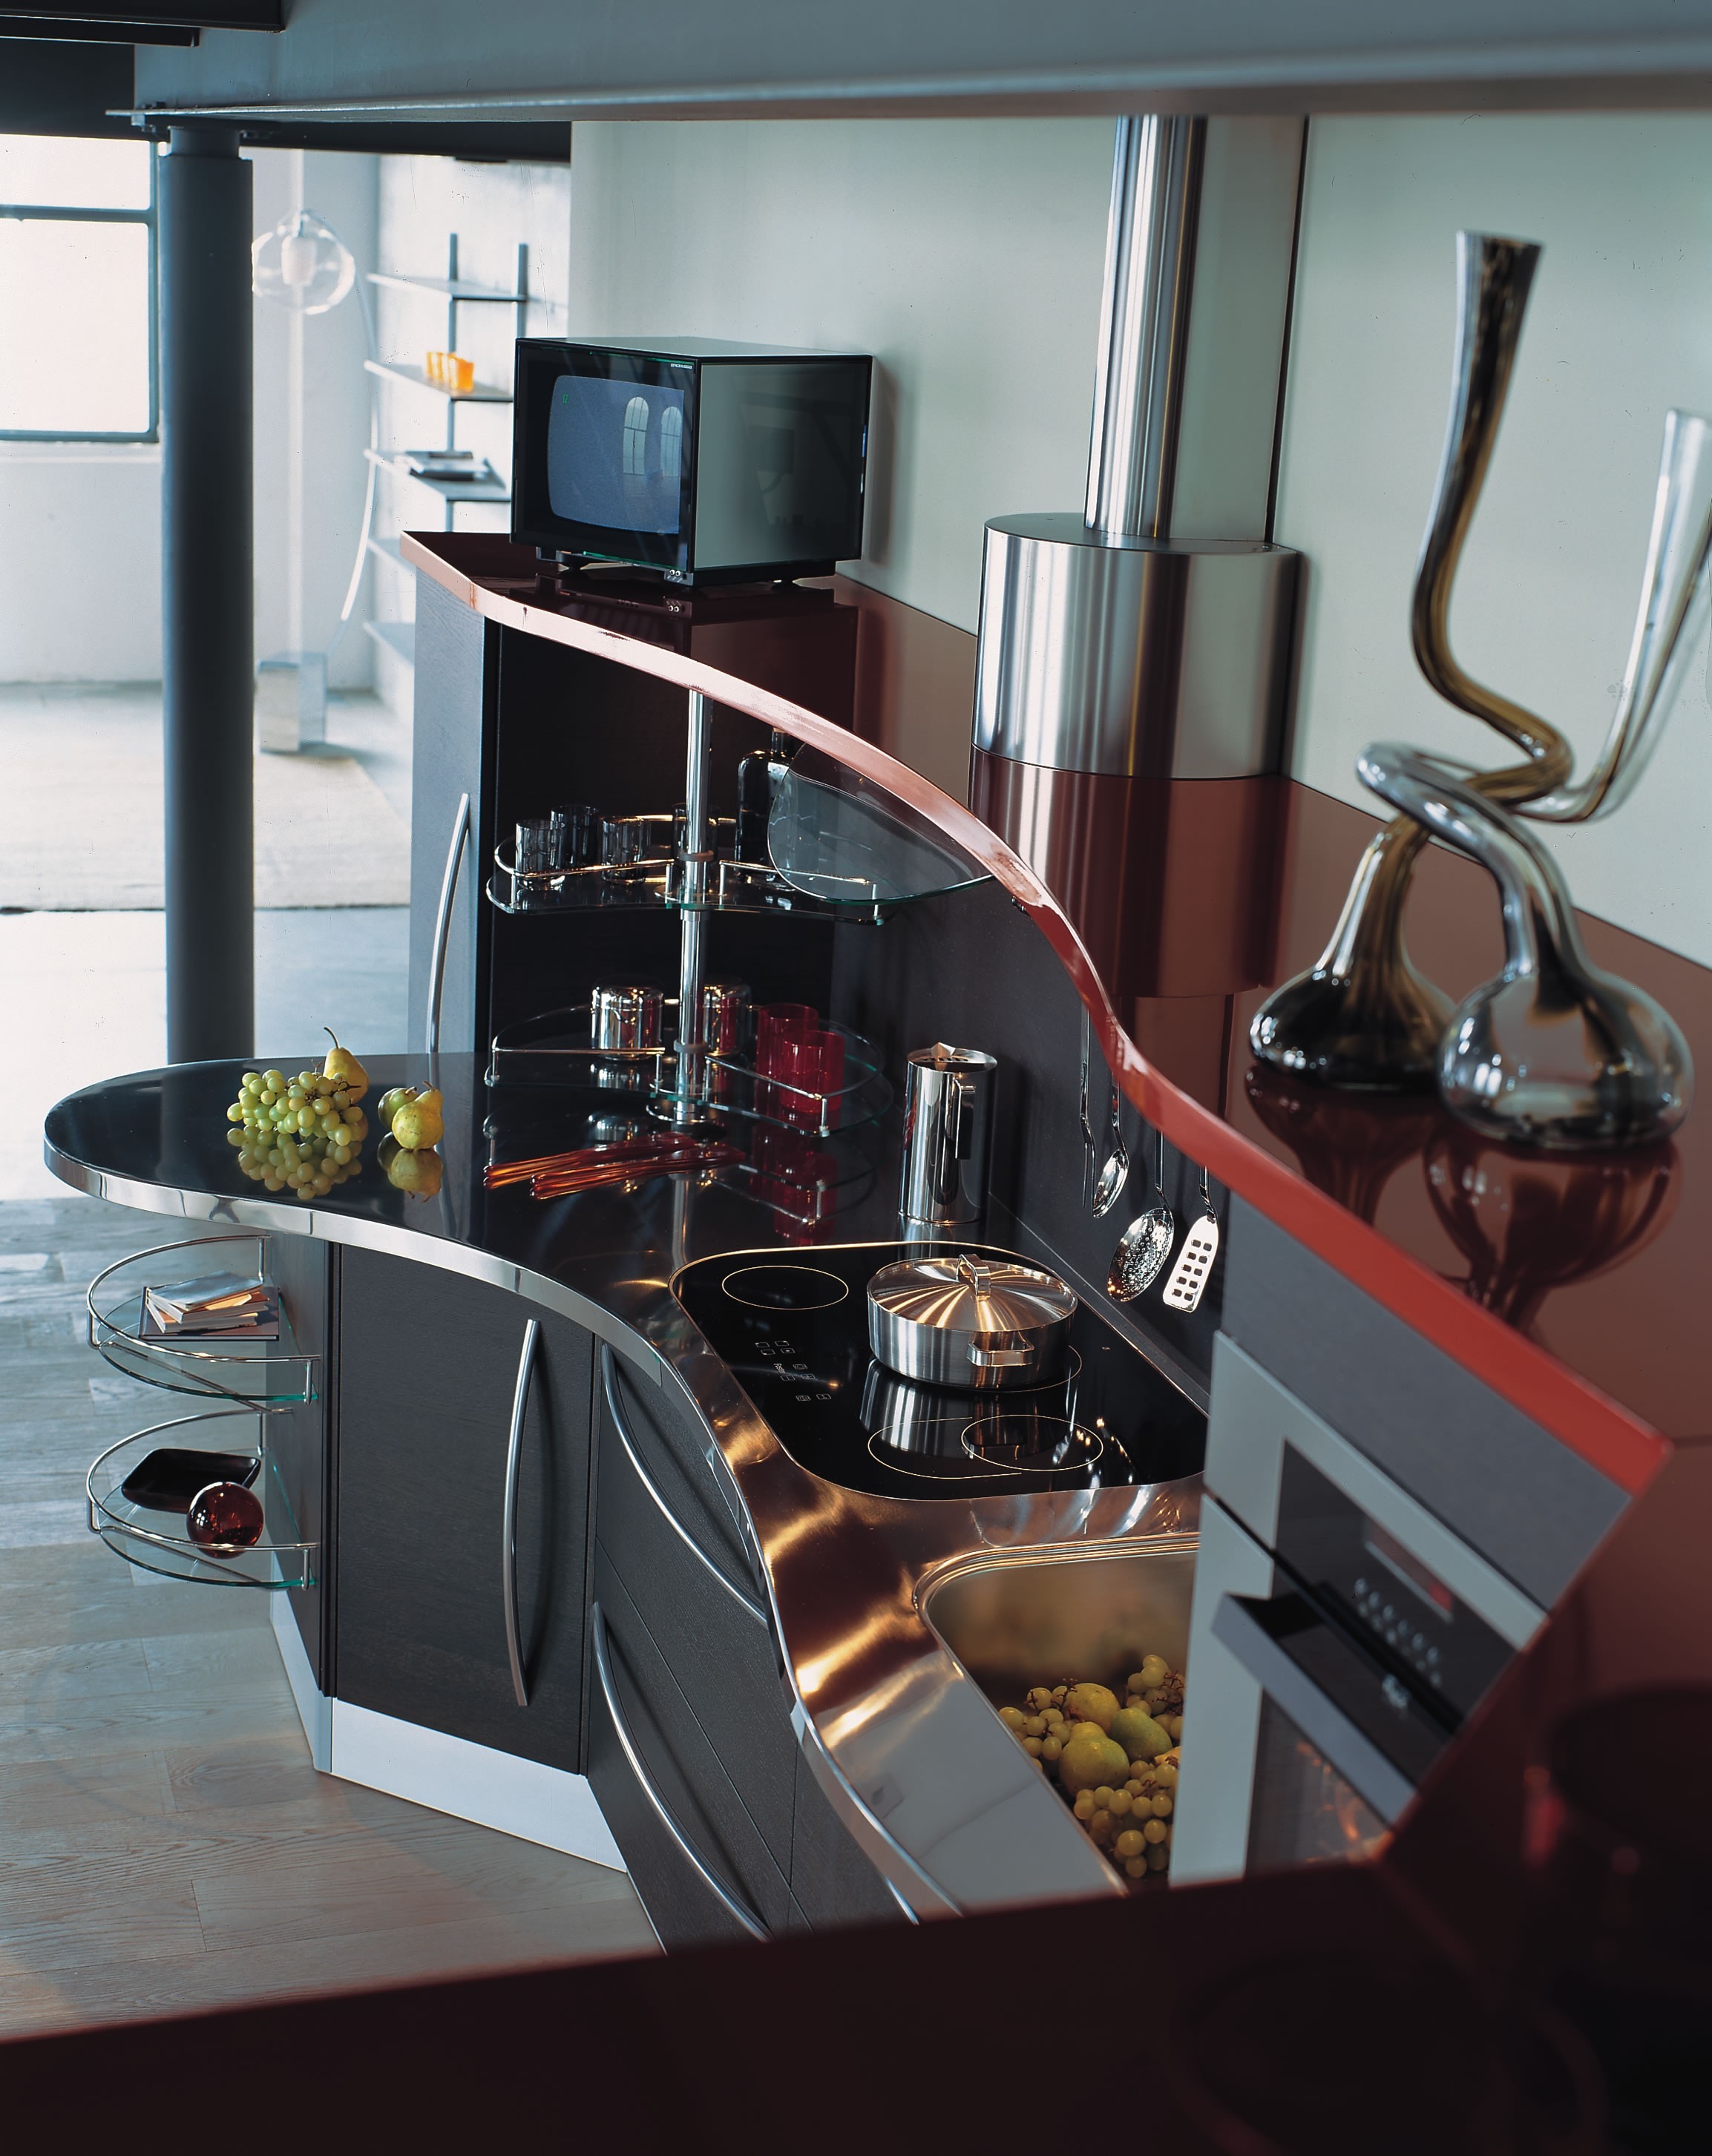 General 2307x2906 kitchen interior interior design modern